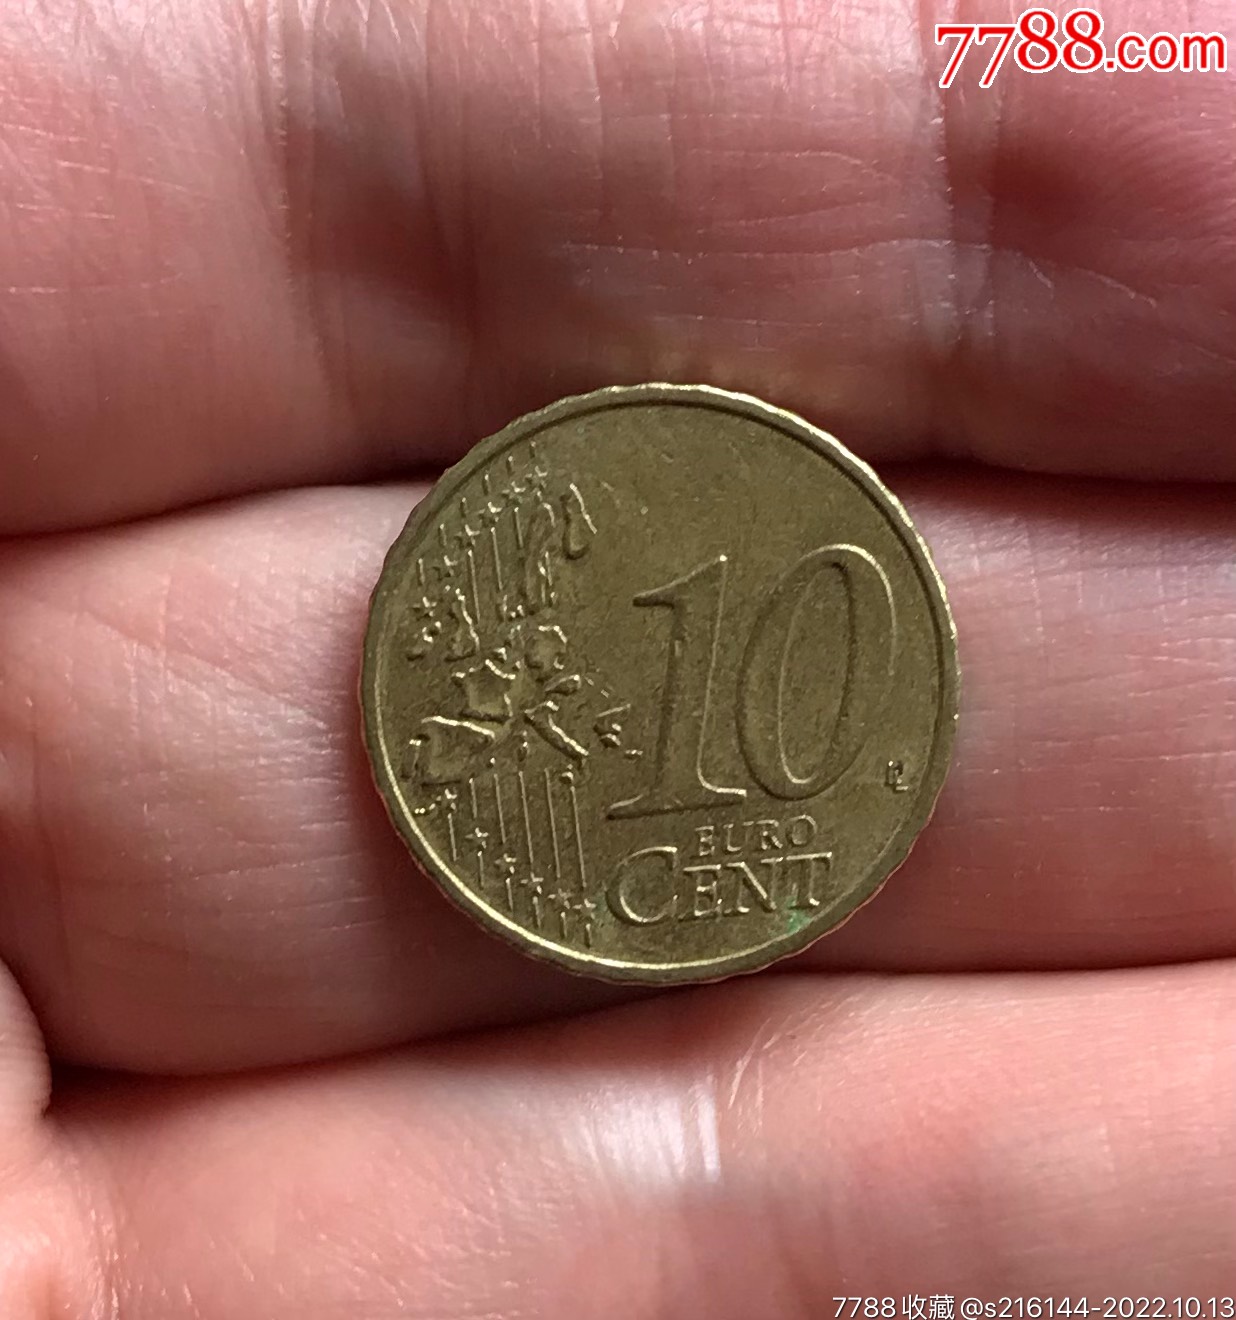 10欧元硬币图片正面图片